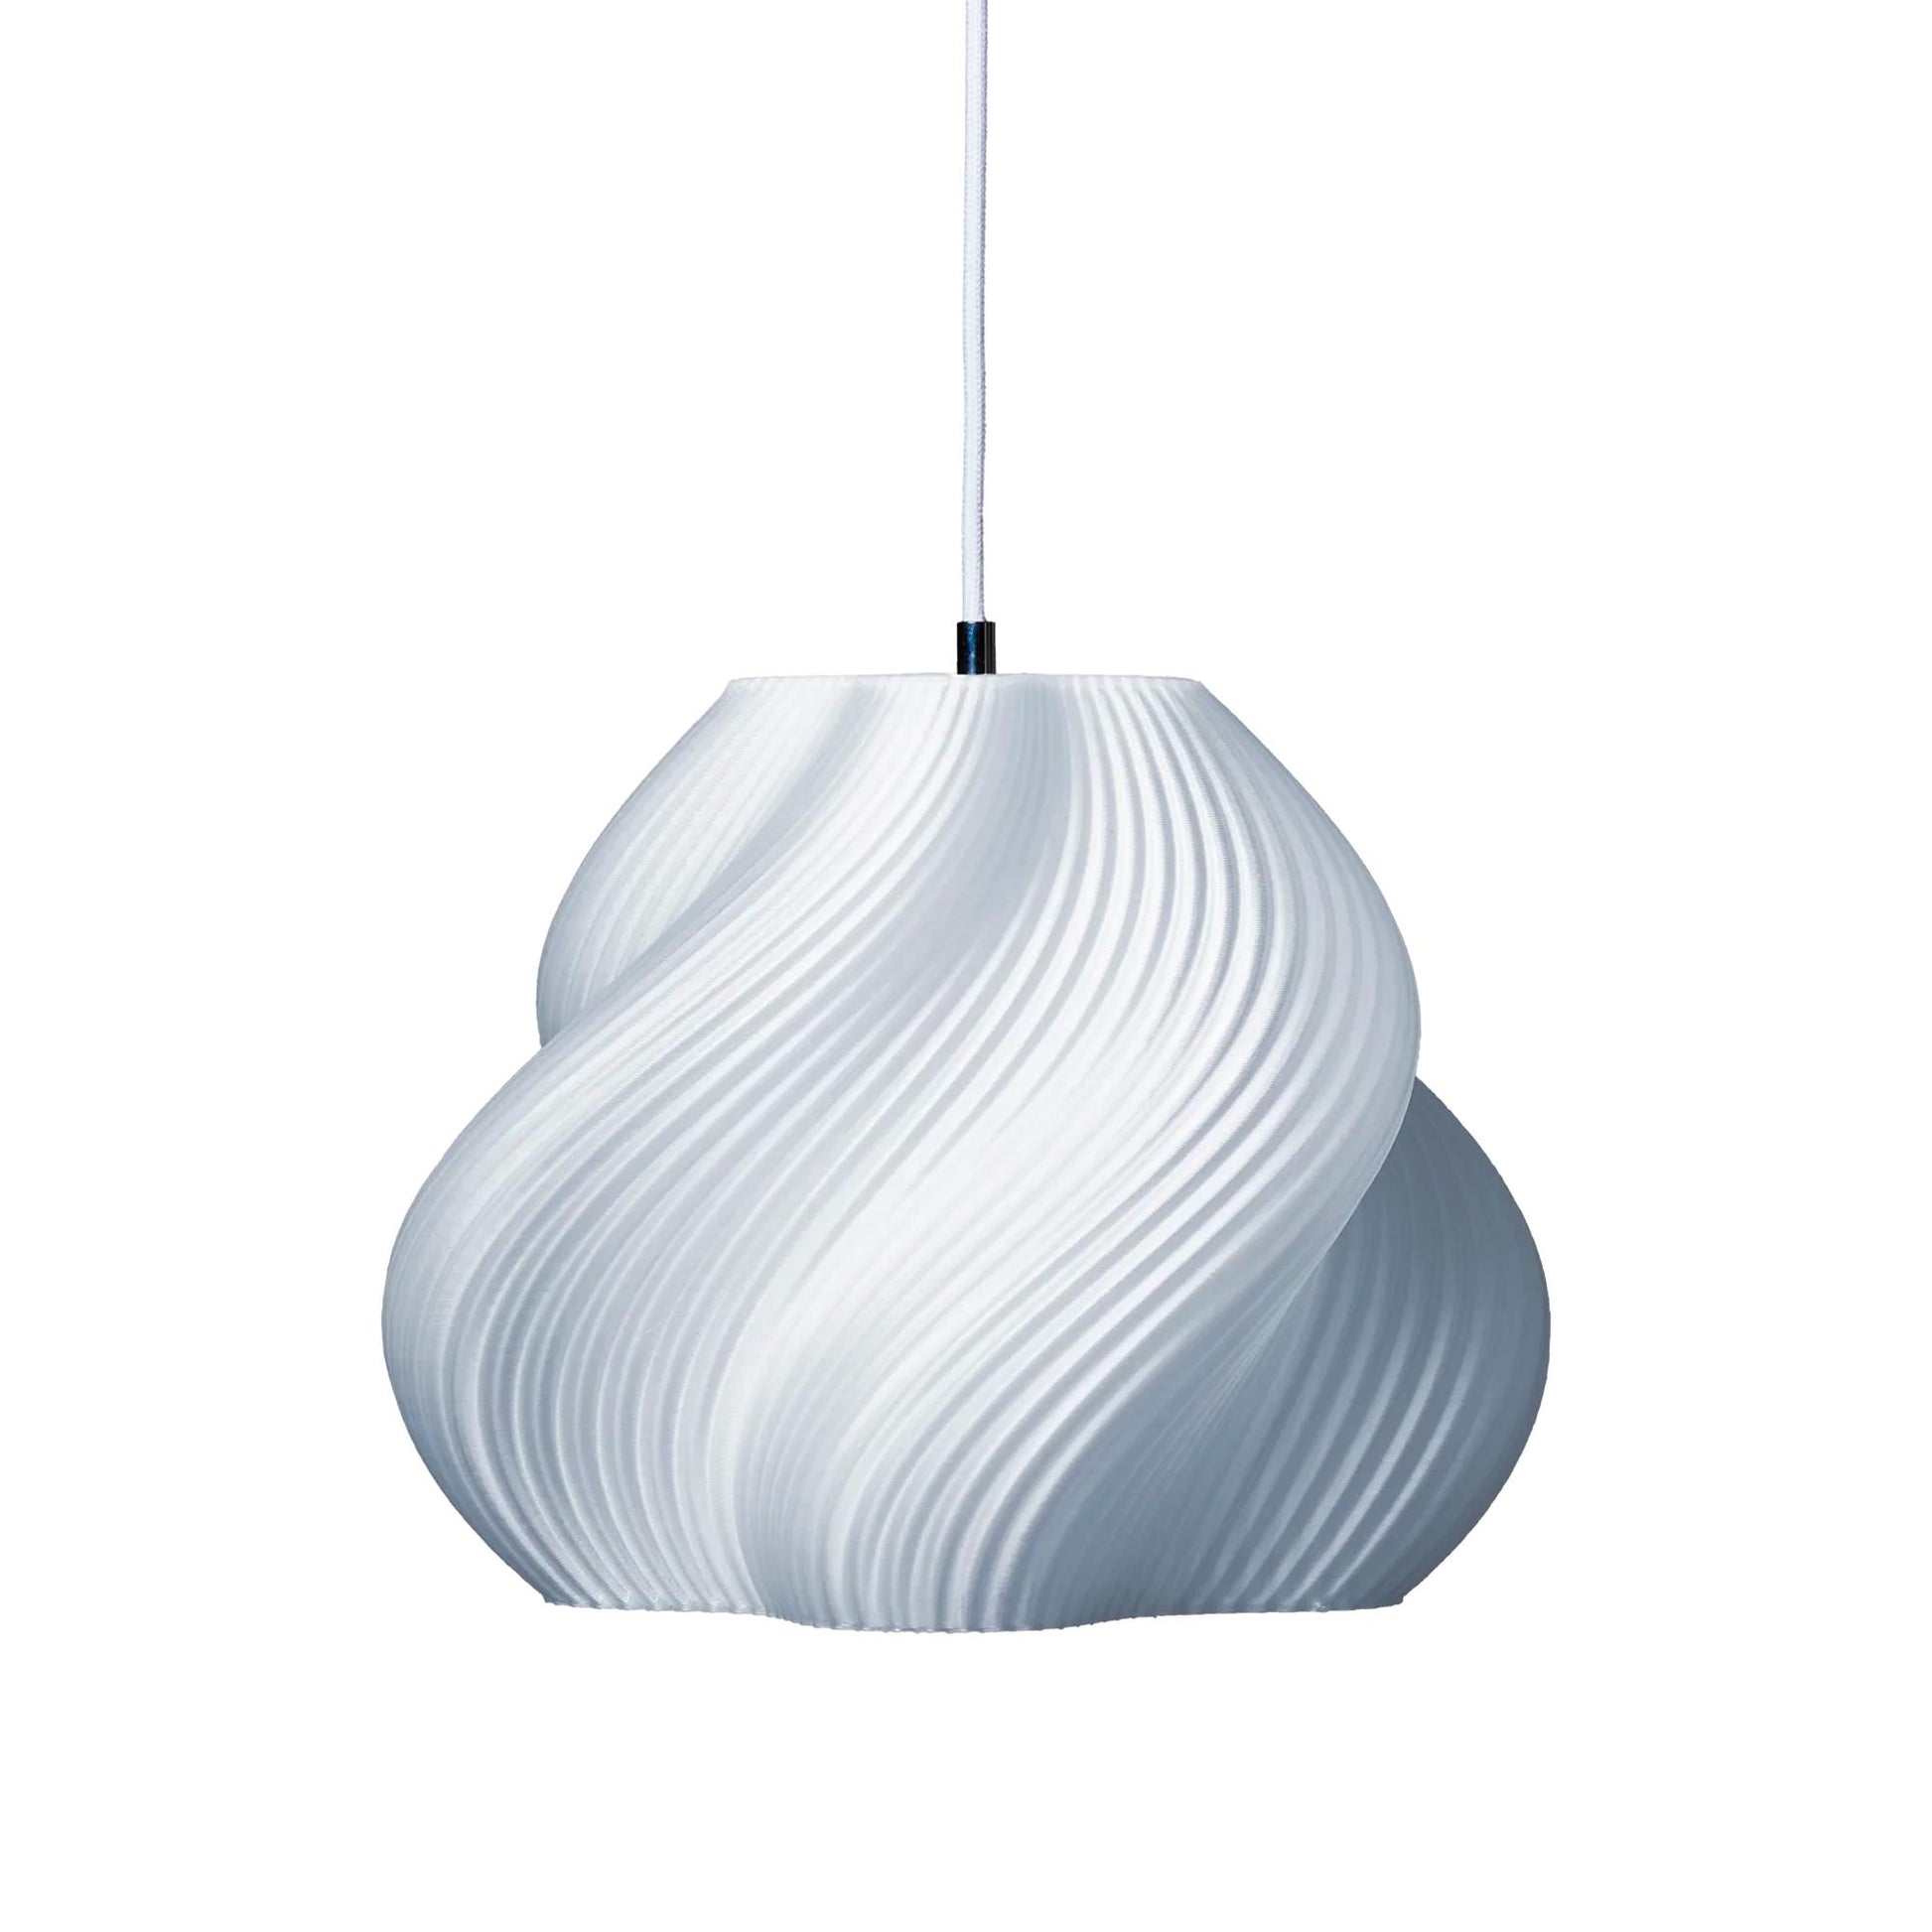 Soft Serve 03 Pendant Lamp by Crème Atelier #Chrome